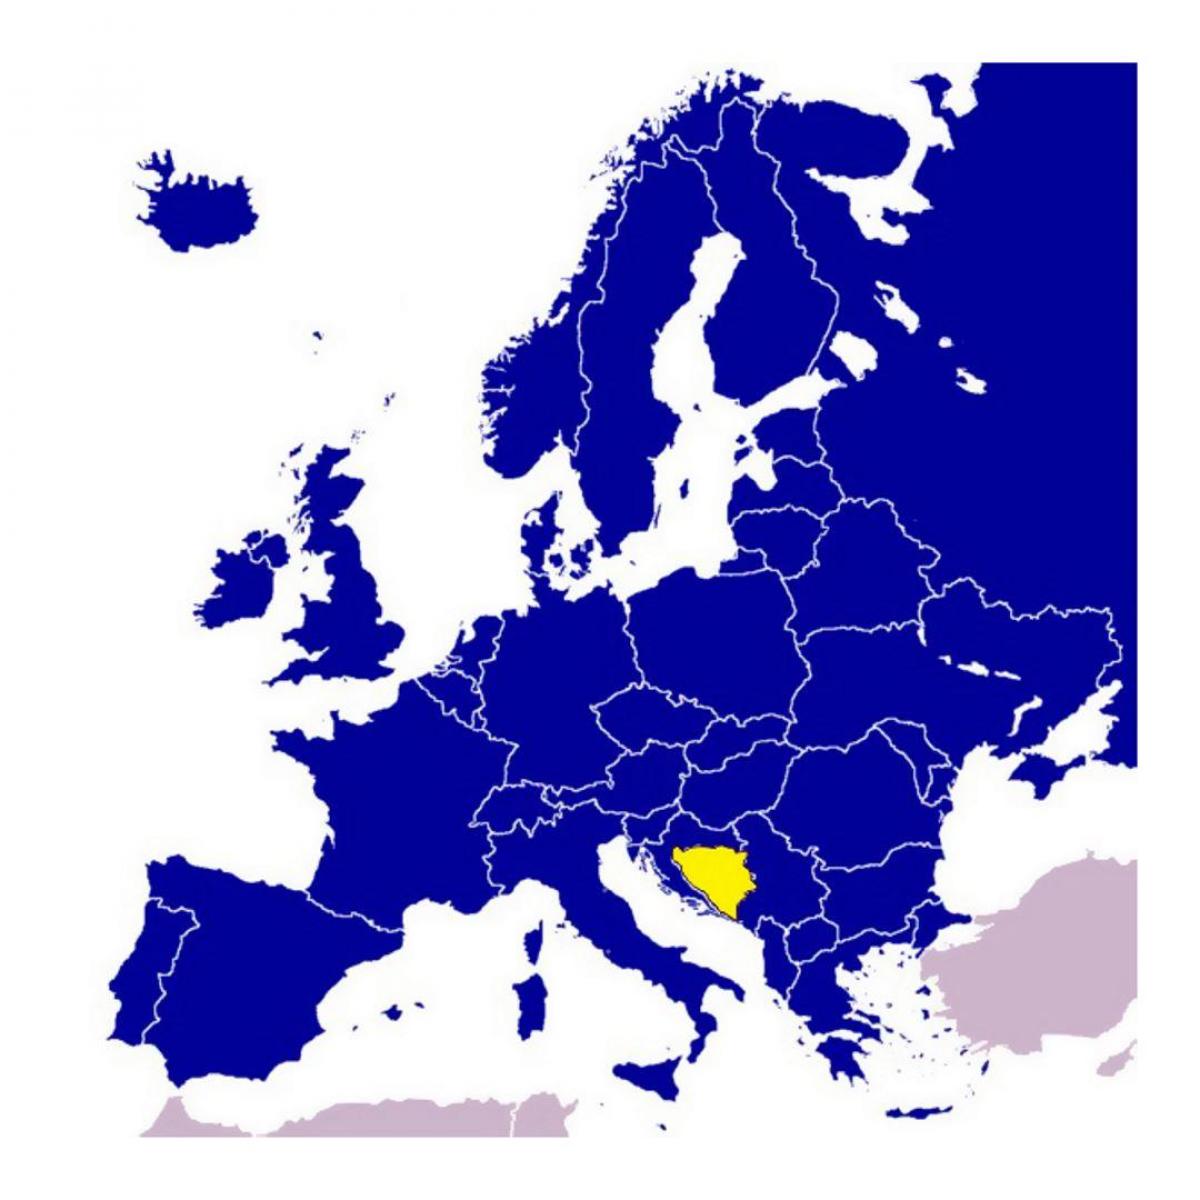 แผนที่ของบอสเนียและเฮอร์เซโกวินายุโรป